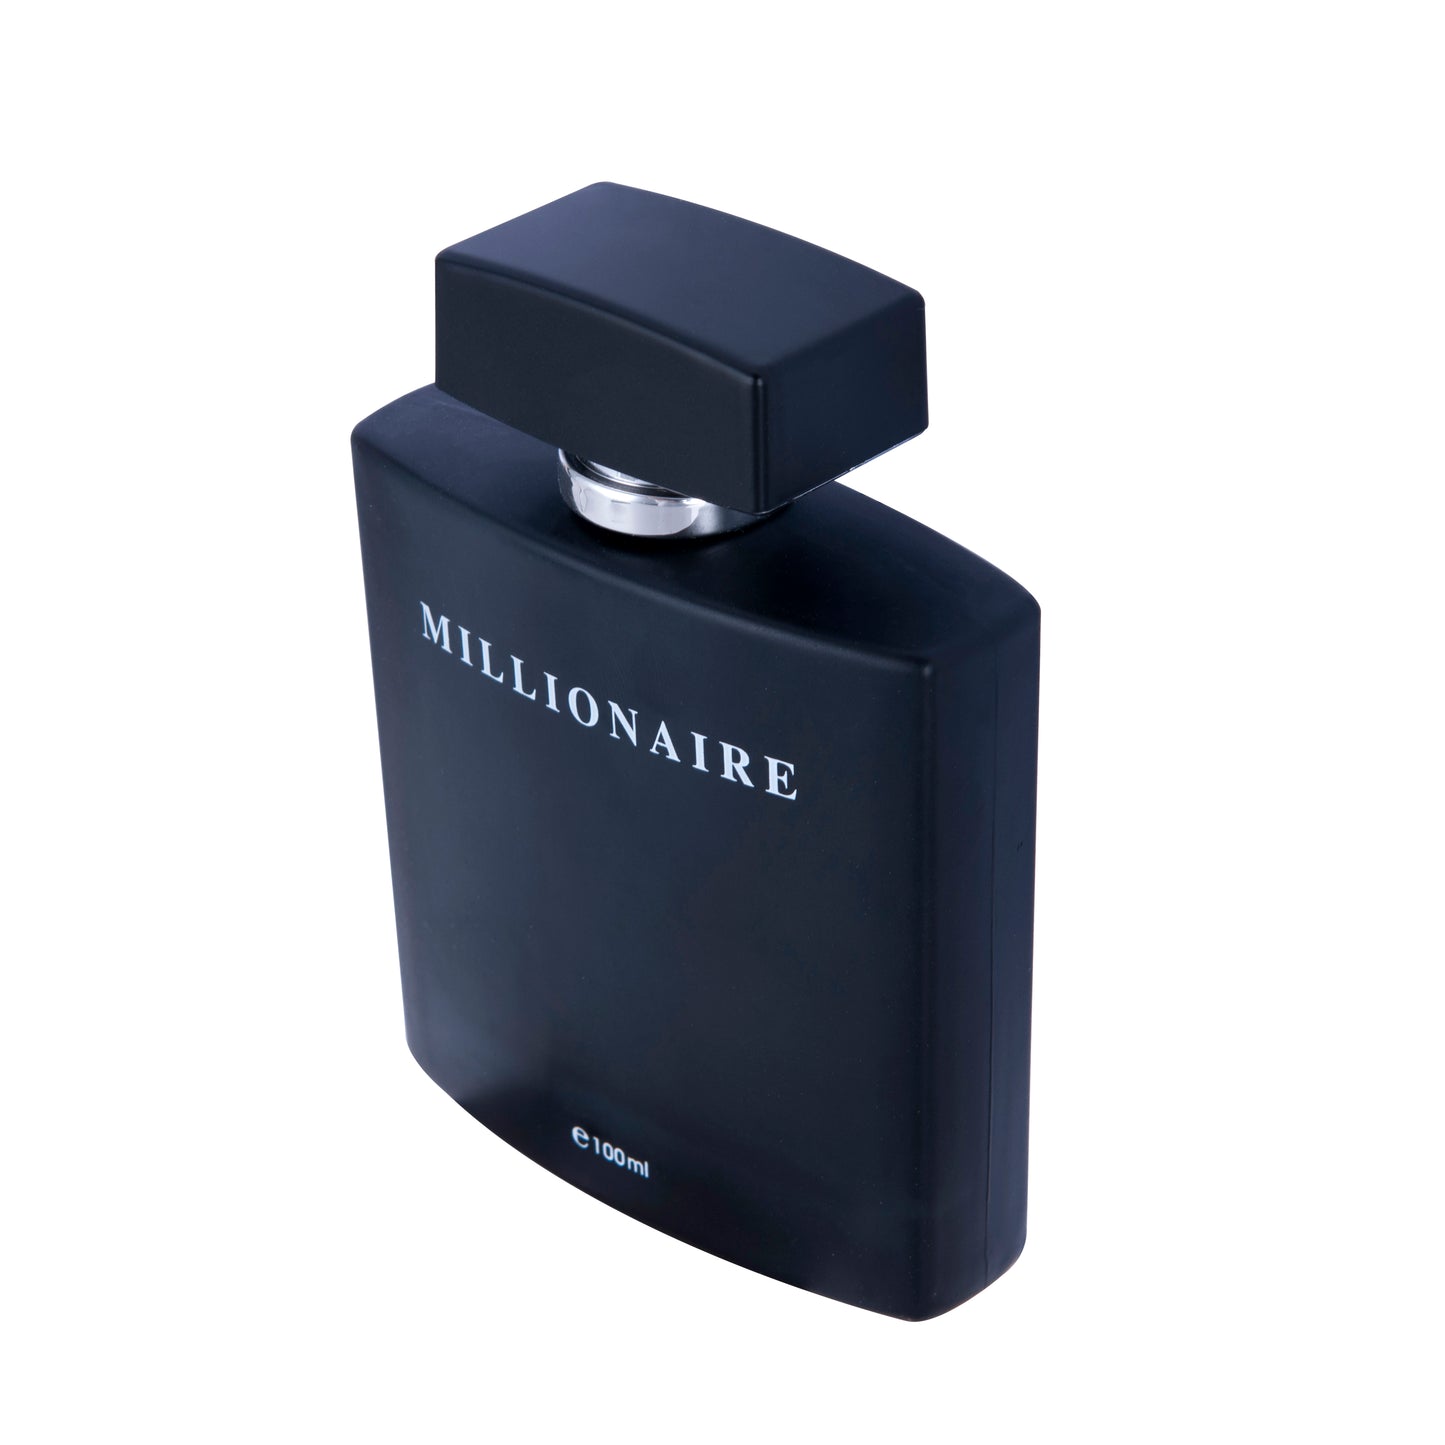 PERFUME&BEAUTY Perfume Eau de Parfume for Men, 3.4 oz Spray Parfume for Men 100 ML- Black Millionaire